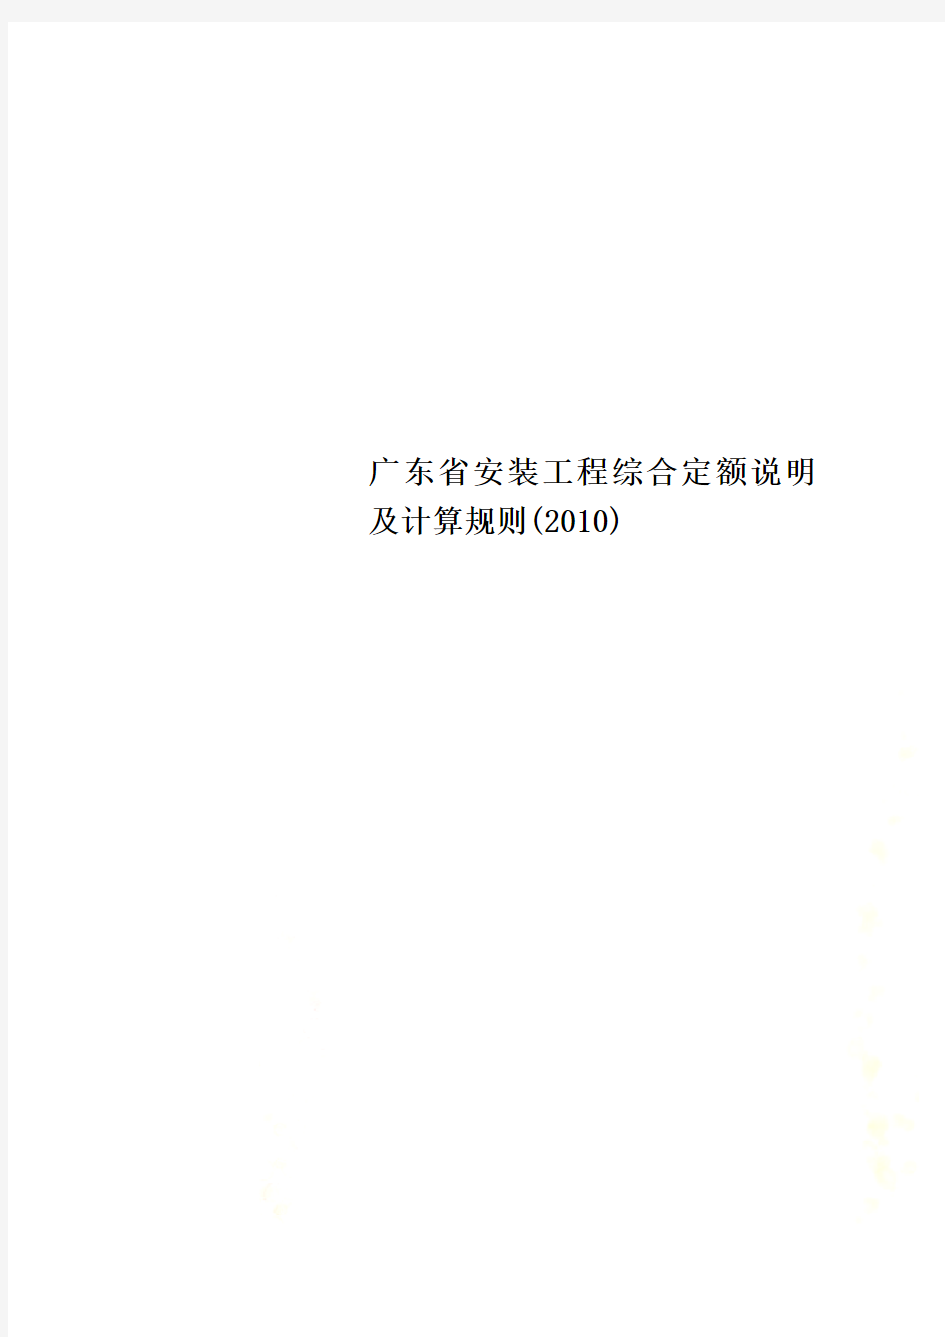 广东省安装工程综合定额说明及计算规则(2010)